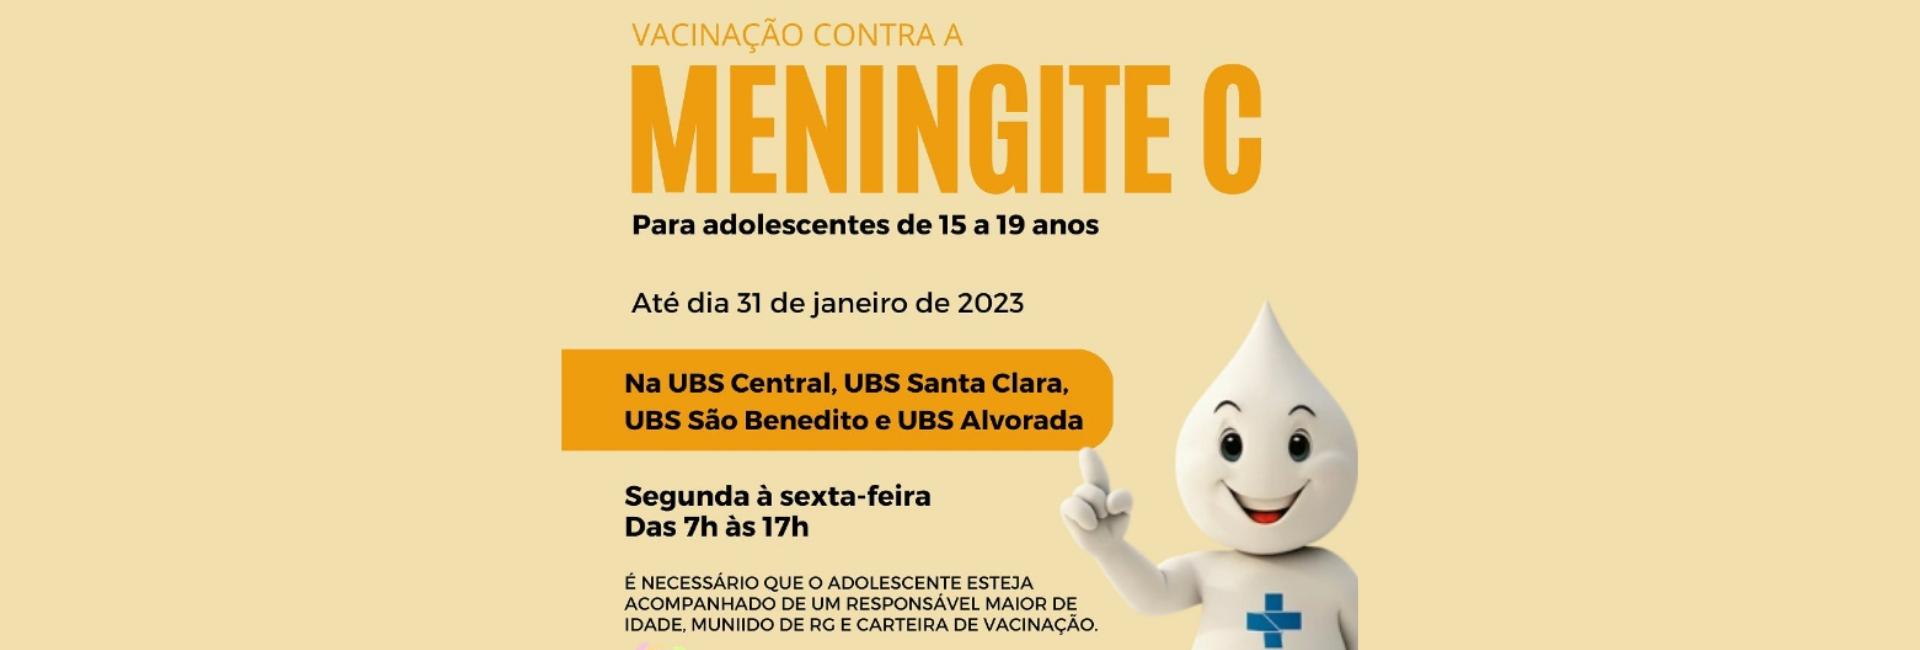 Vacinação contra a Meningite C continua em Novo Horizonte